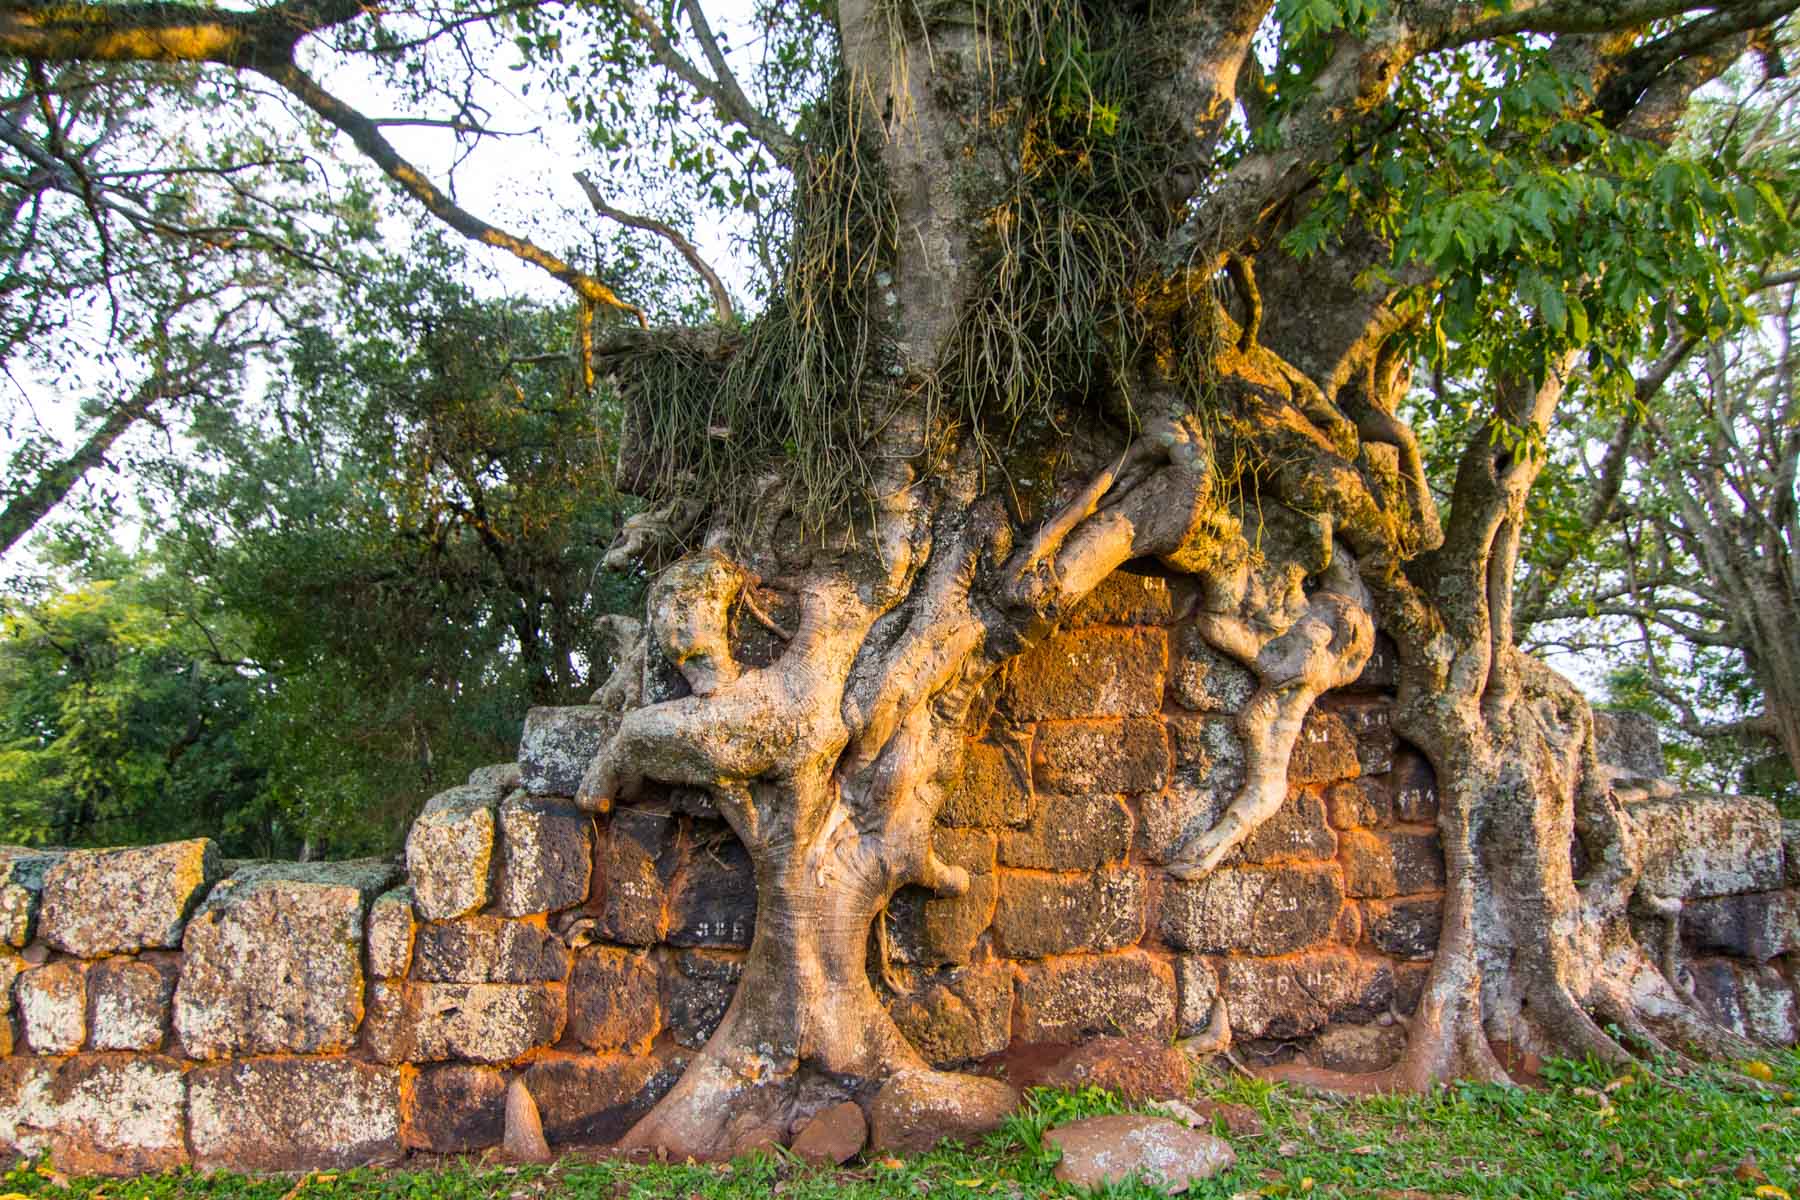 D’imposantes racines d’un arbre poussent au travers des ruines d’une vieille fondation en pierres.